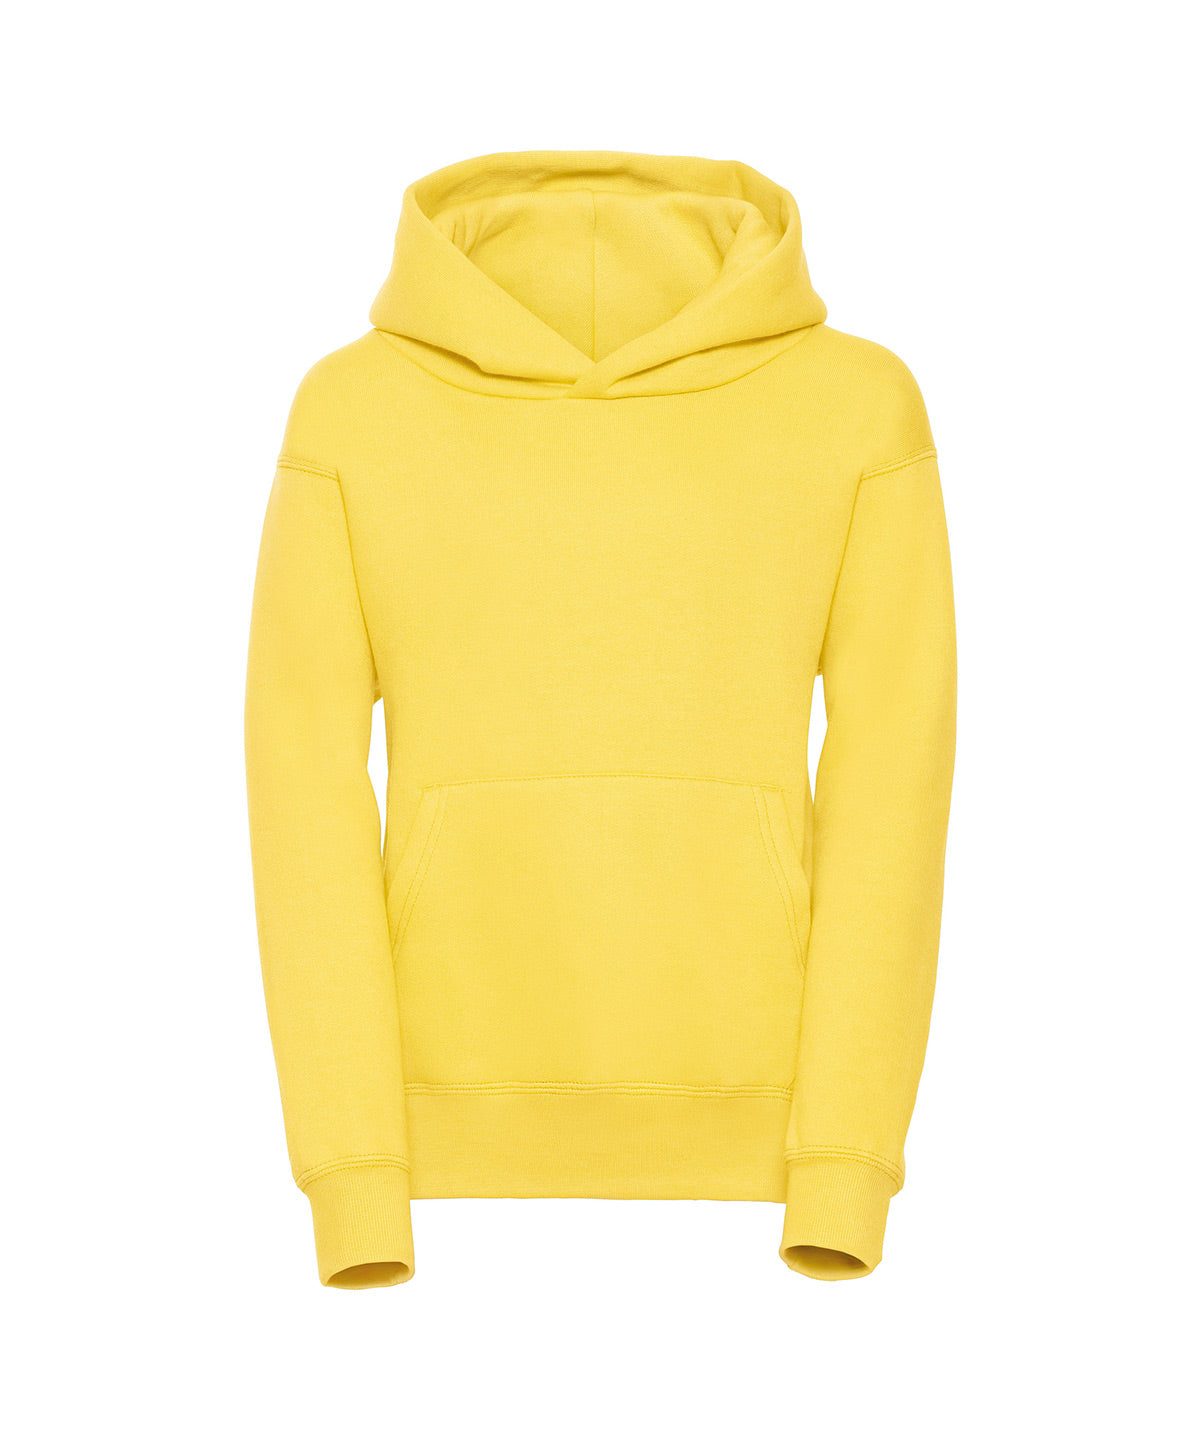 Premium 50/50 hoodie, Jr